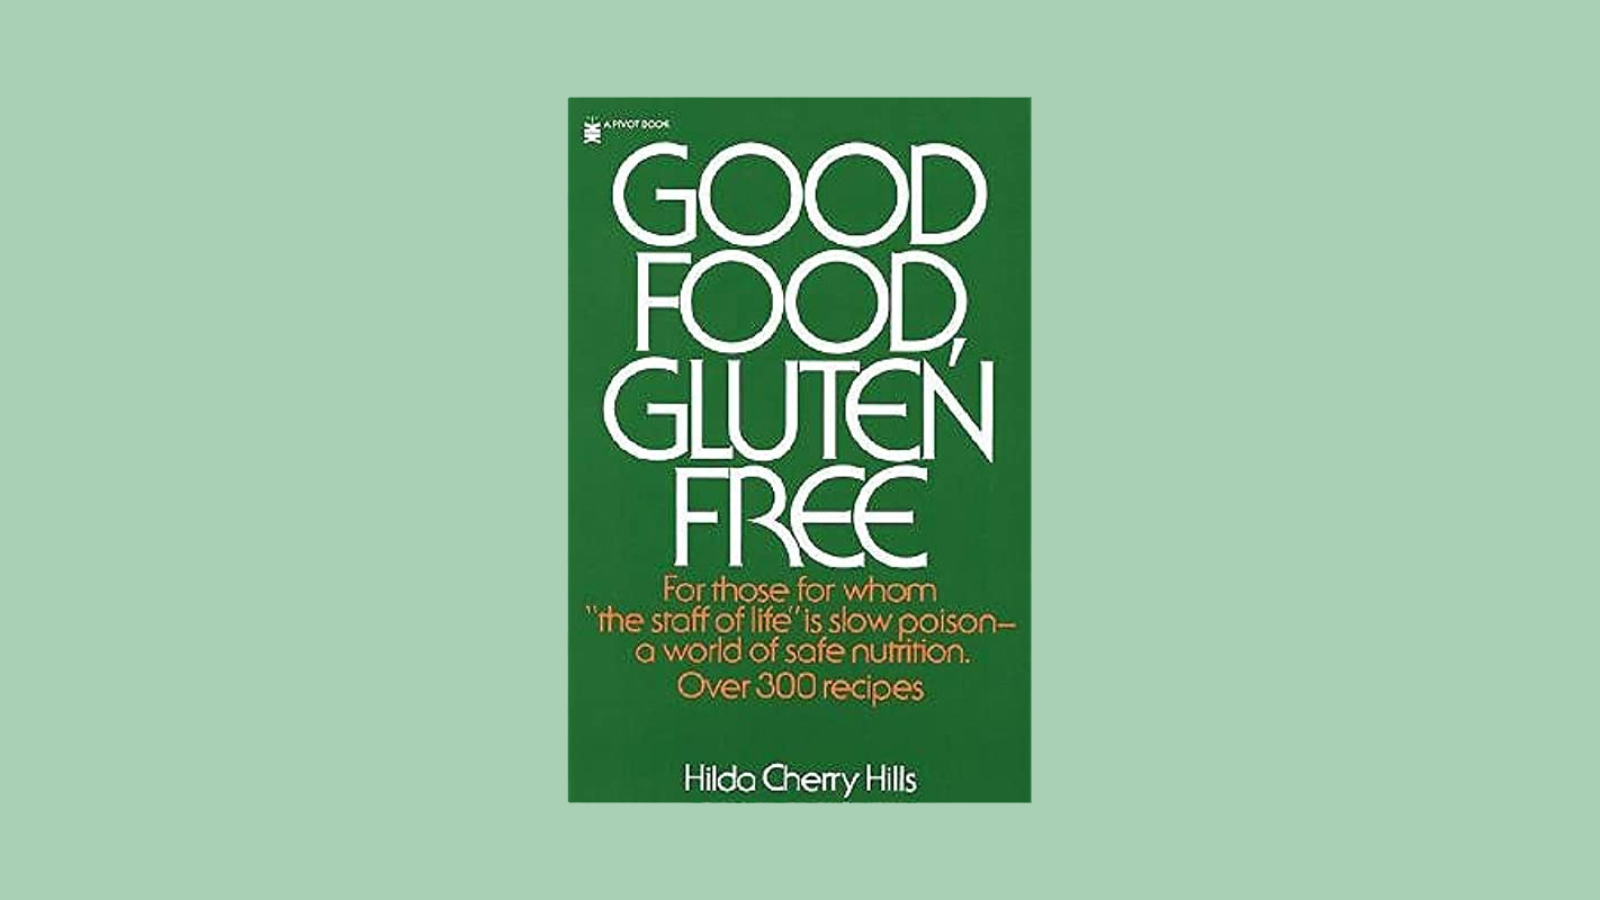 Good Food, Gluten Free by Hilda Cherry Hills